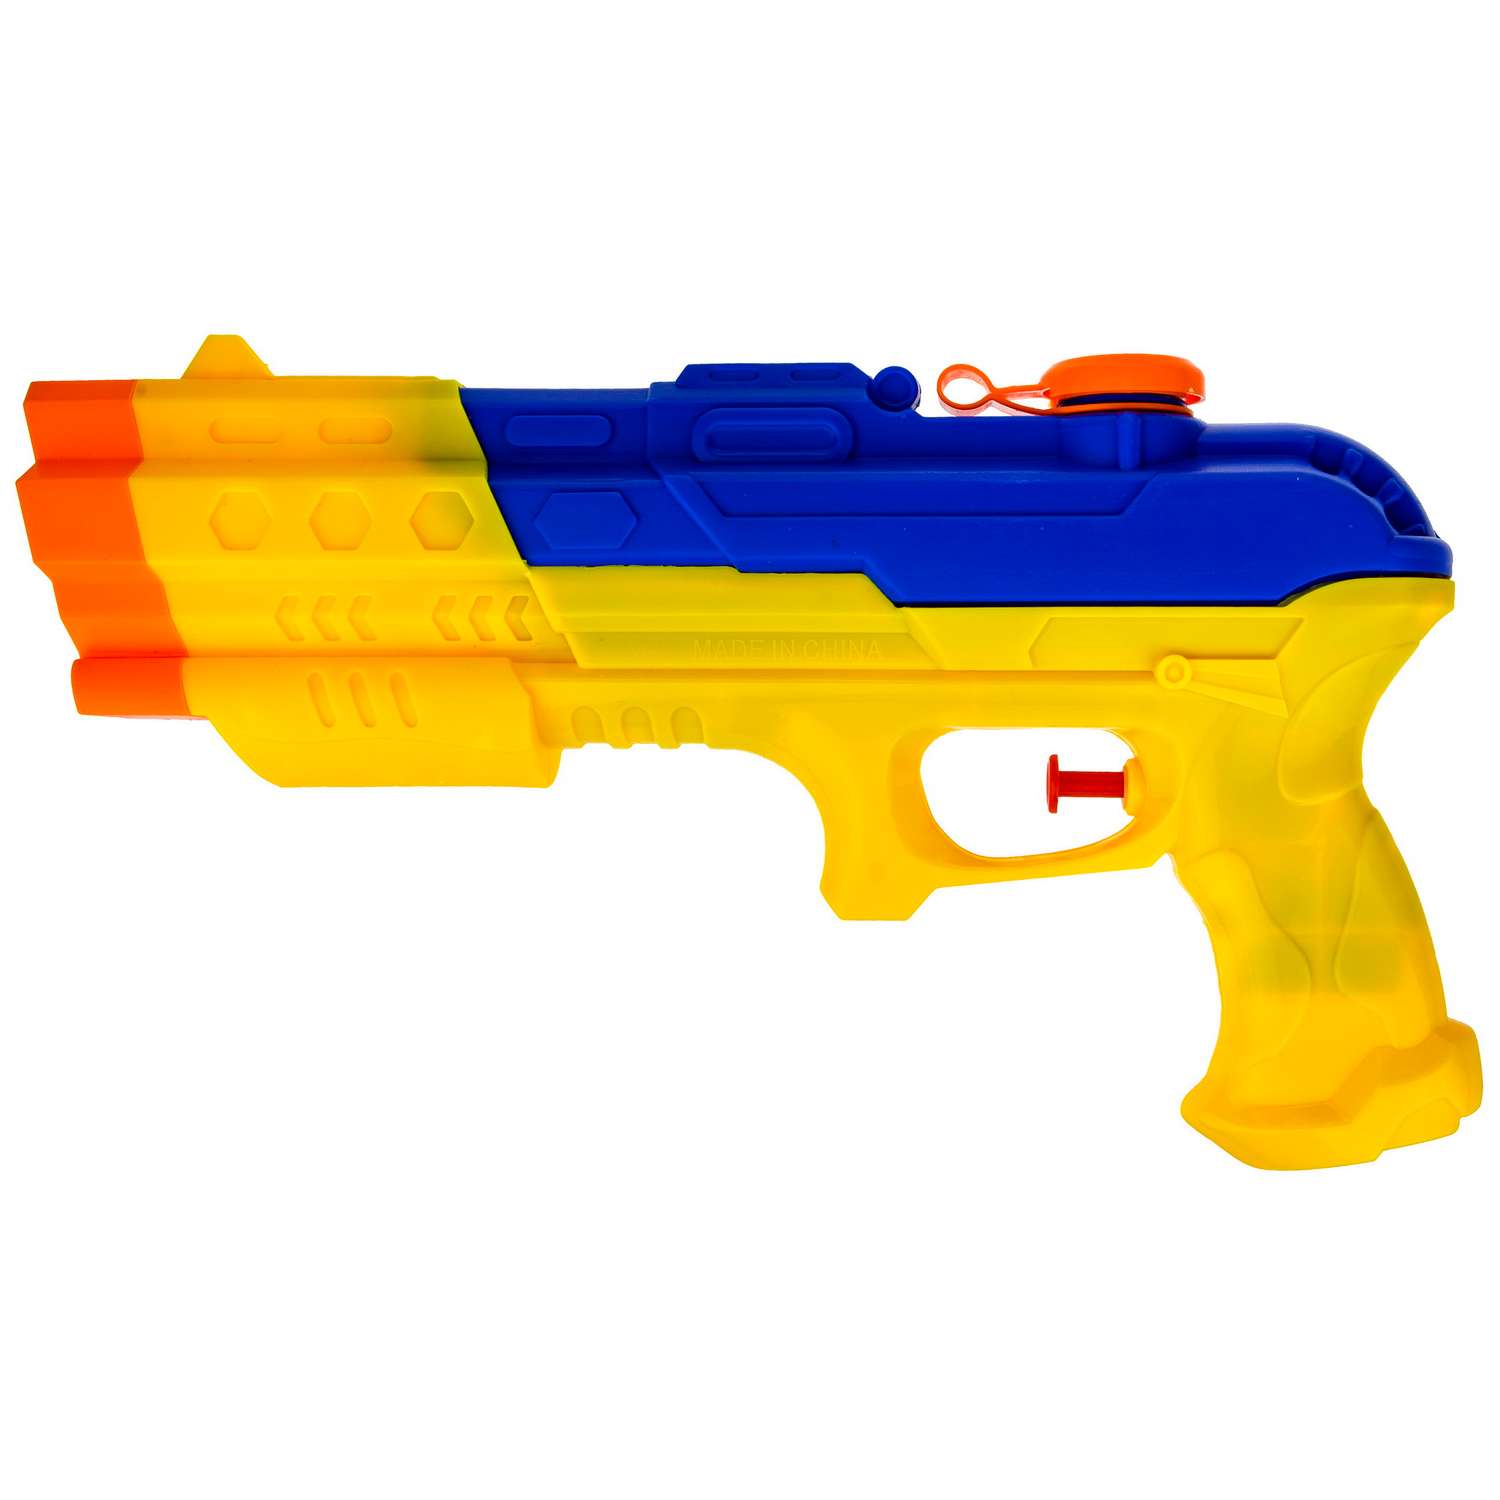 Водное оружие Aqua мания Пистолет жёлто-синий - фото 1